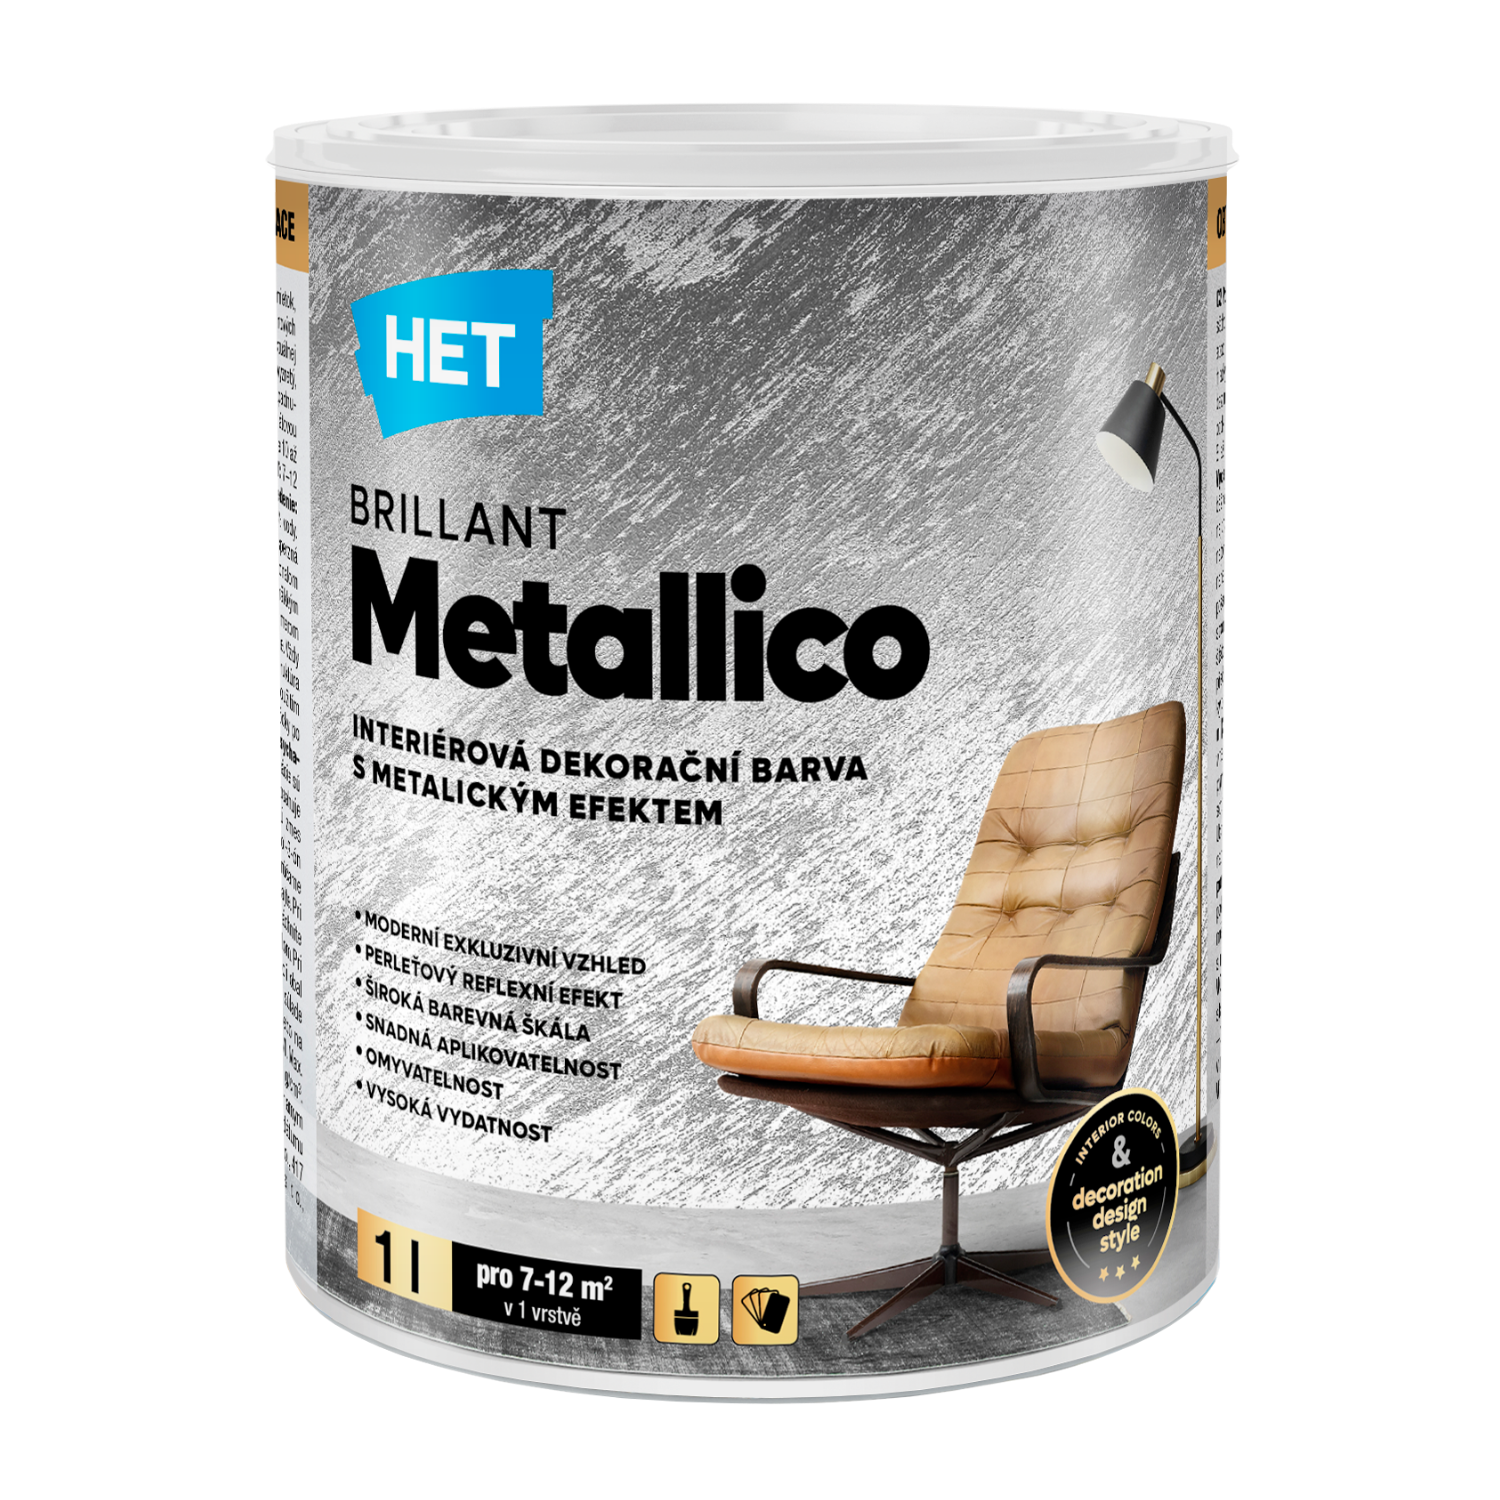 HET BRILLANT Metallico interiérová akrylátová dekoračná disperzná farba s metalickým efektom 1l